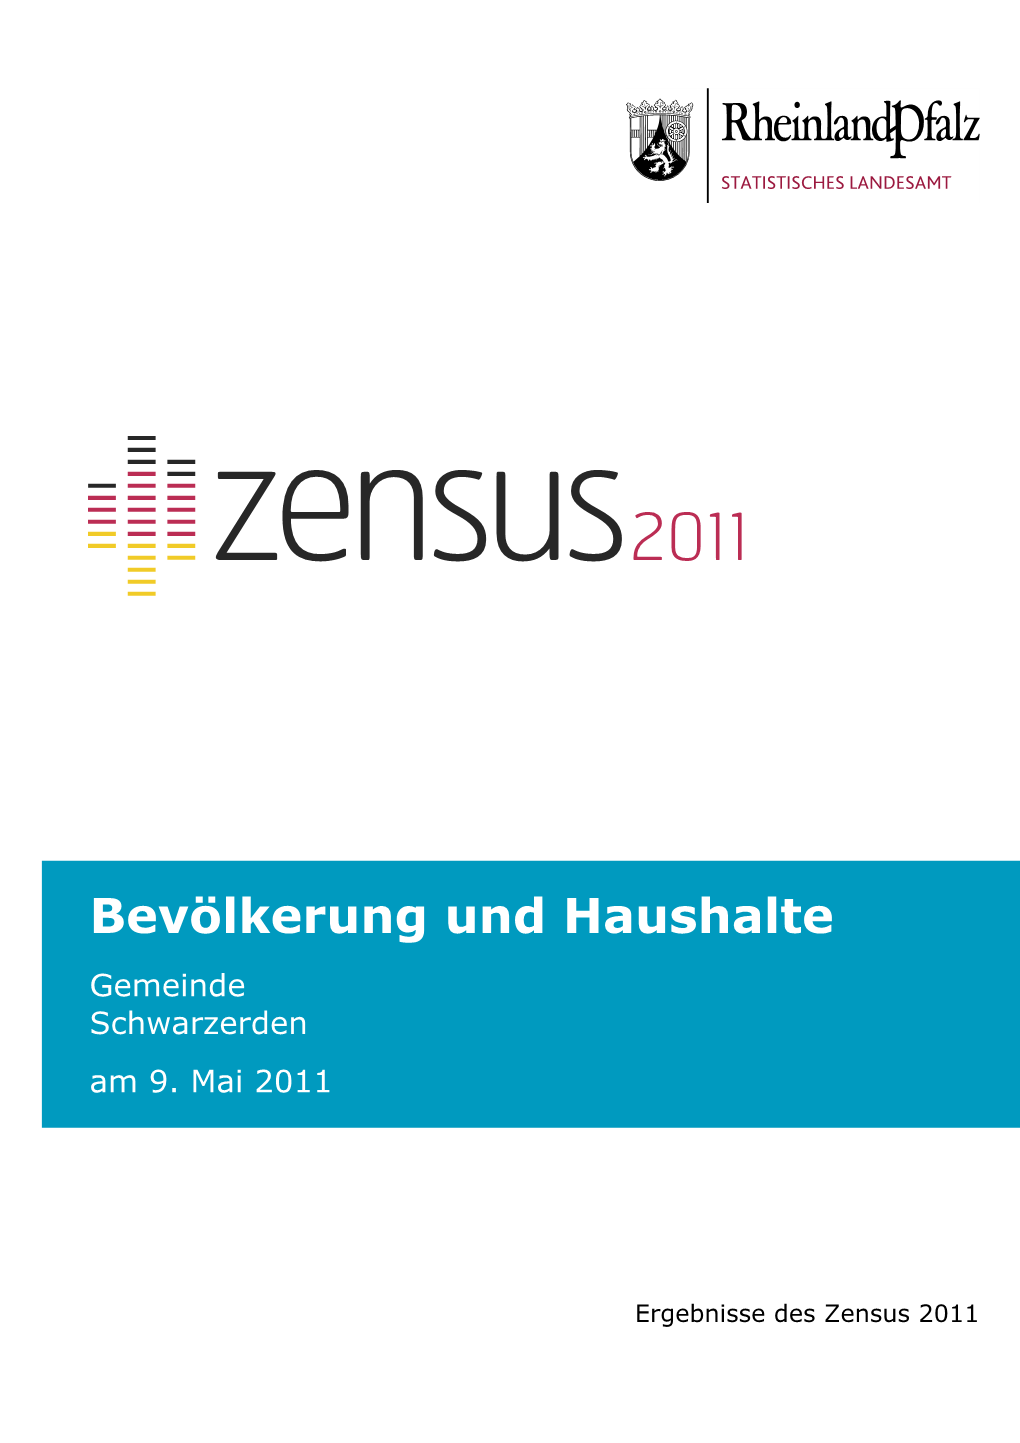 Bevölkerung Und Haushalte Am 9. Mai 2011, Schwarzerden